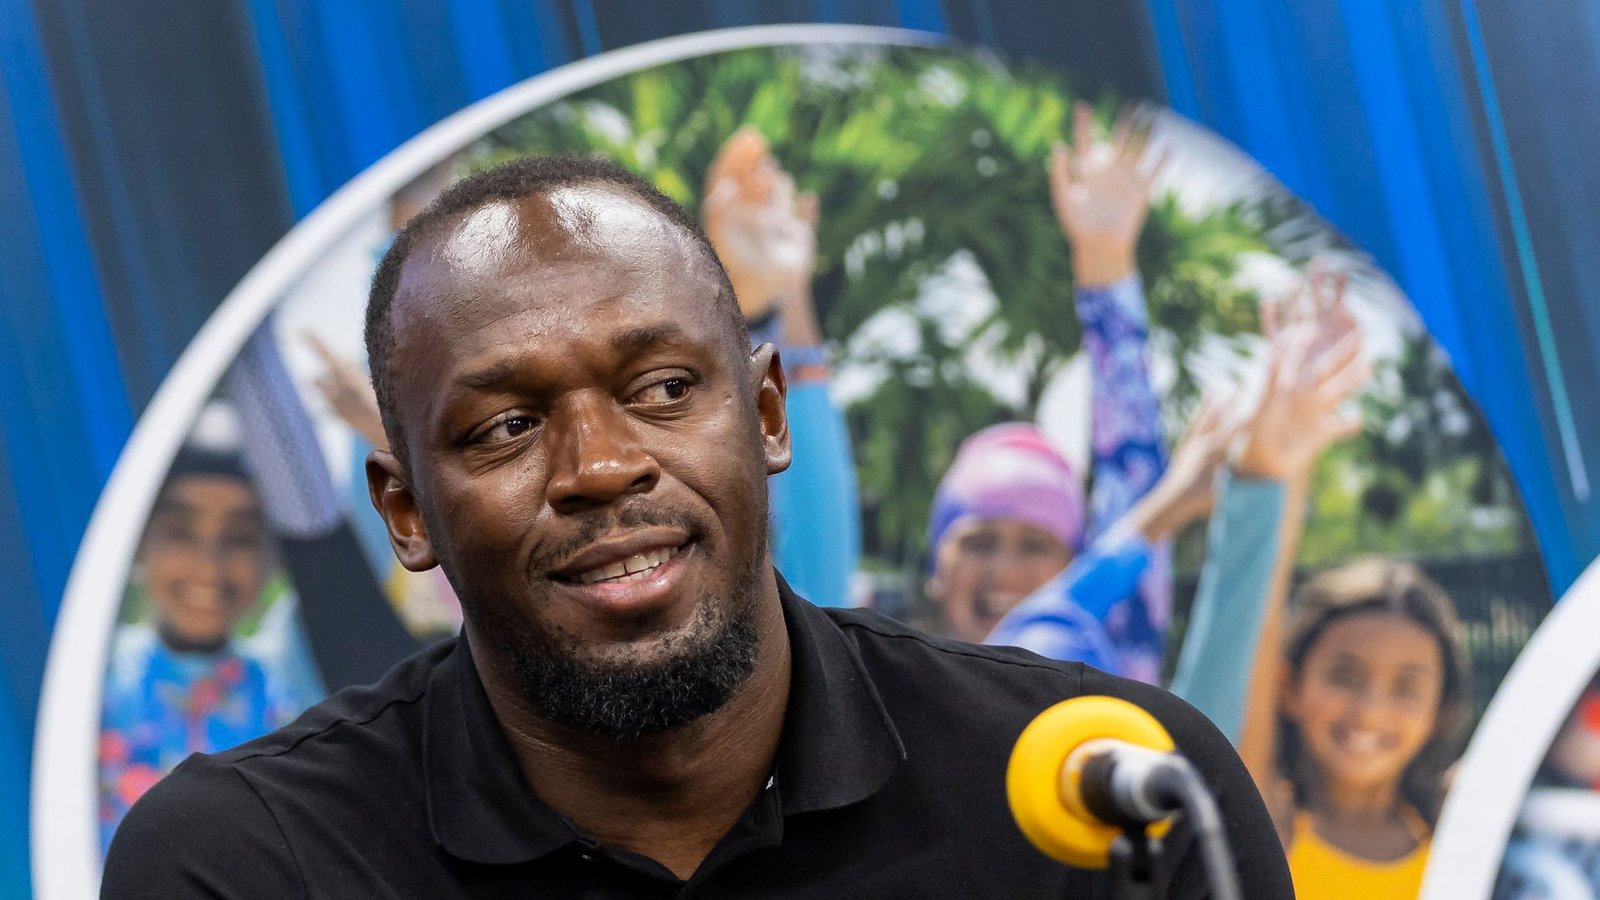 "Ich habe über einen so langen Zeitraum dominiert, das hat es noch nie gegeben und es wird schwer sein, das zu wiederholen", sagt der 37 Jahre alte olympische Goldmedaillengewinner Usain Bolt.Foto: Matias J. Ocner/Miami Herald/AP/dpa